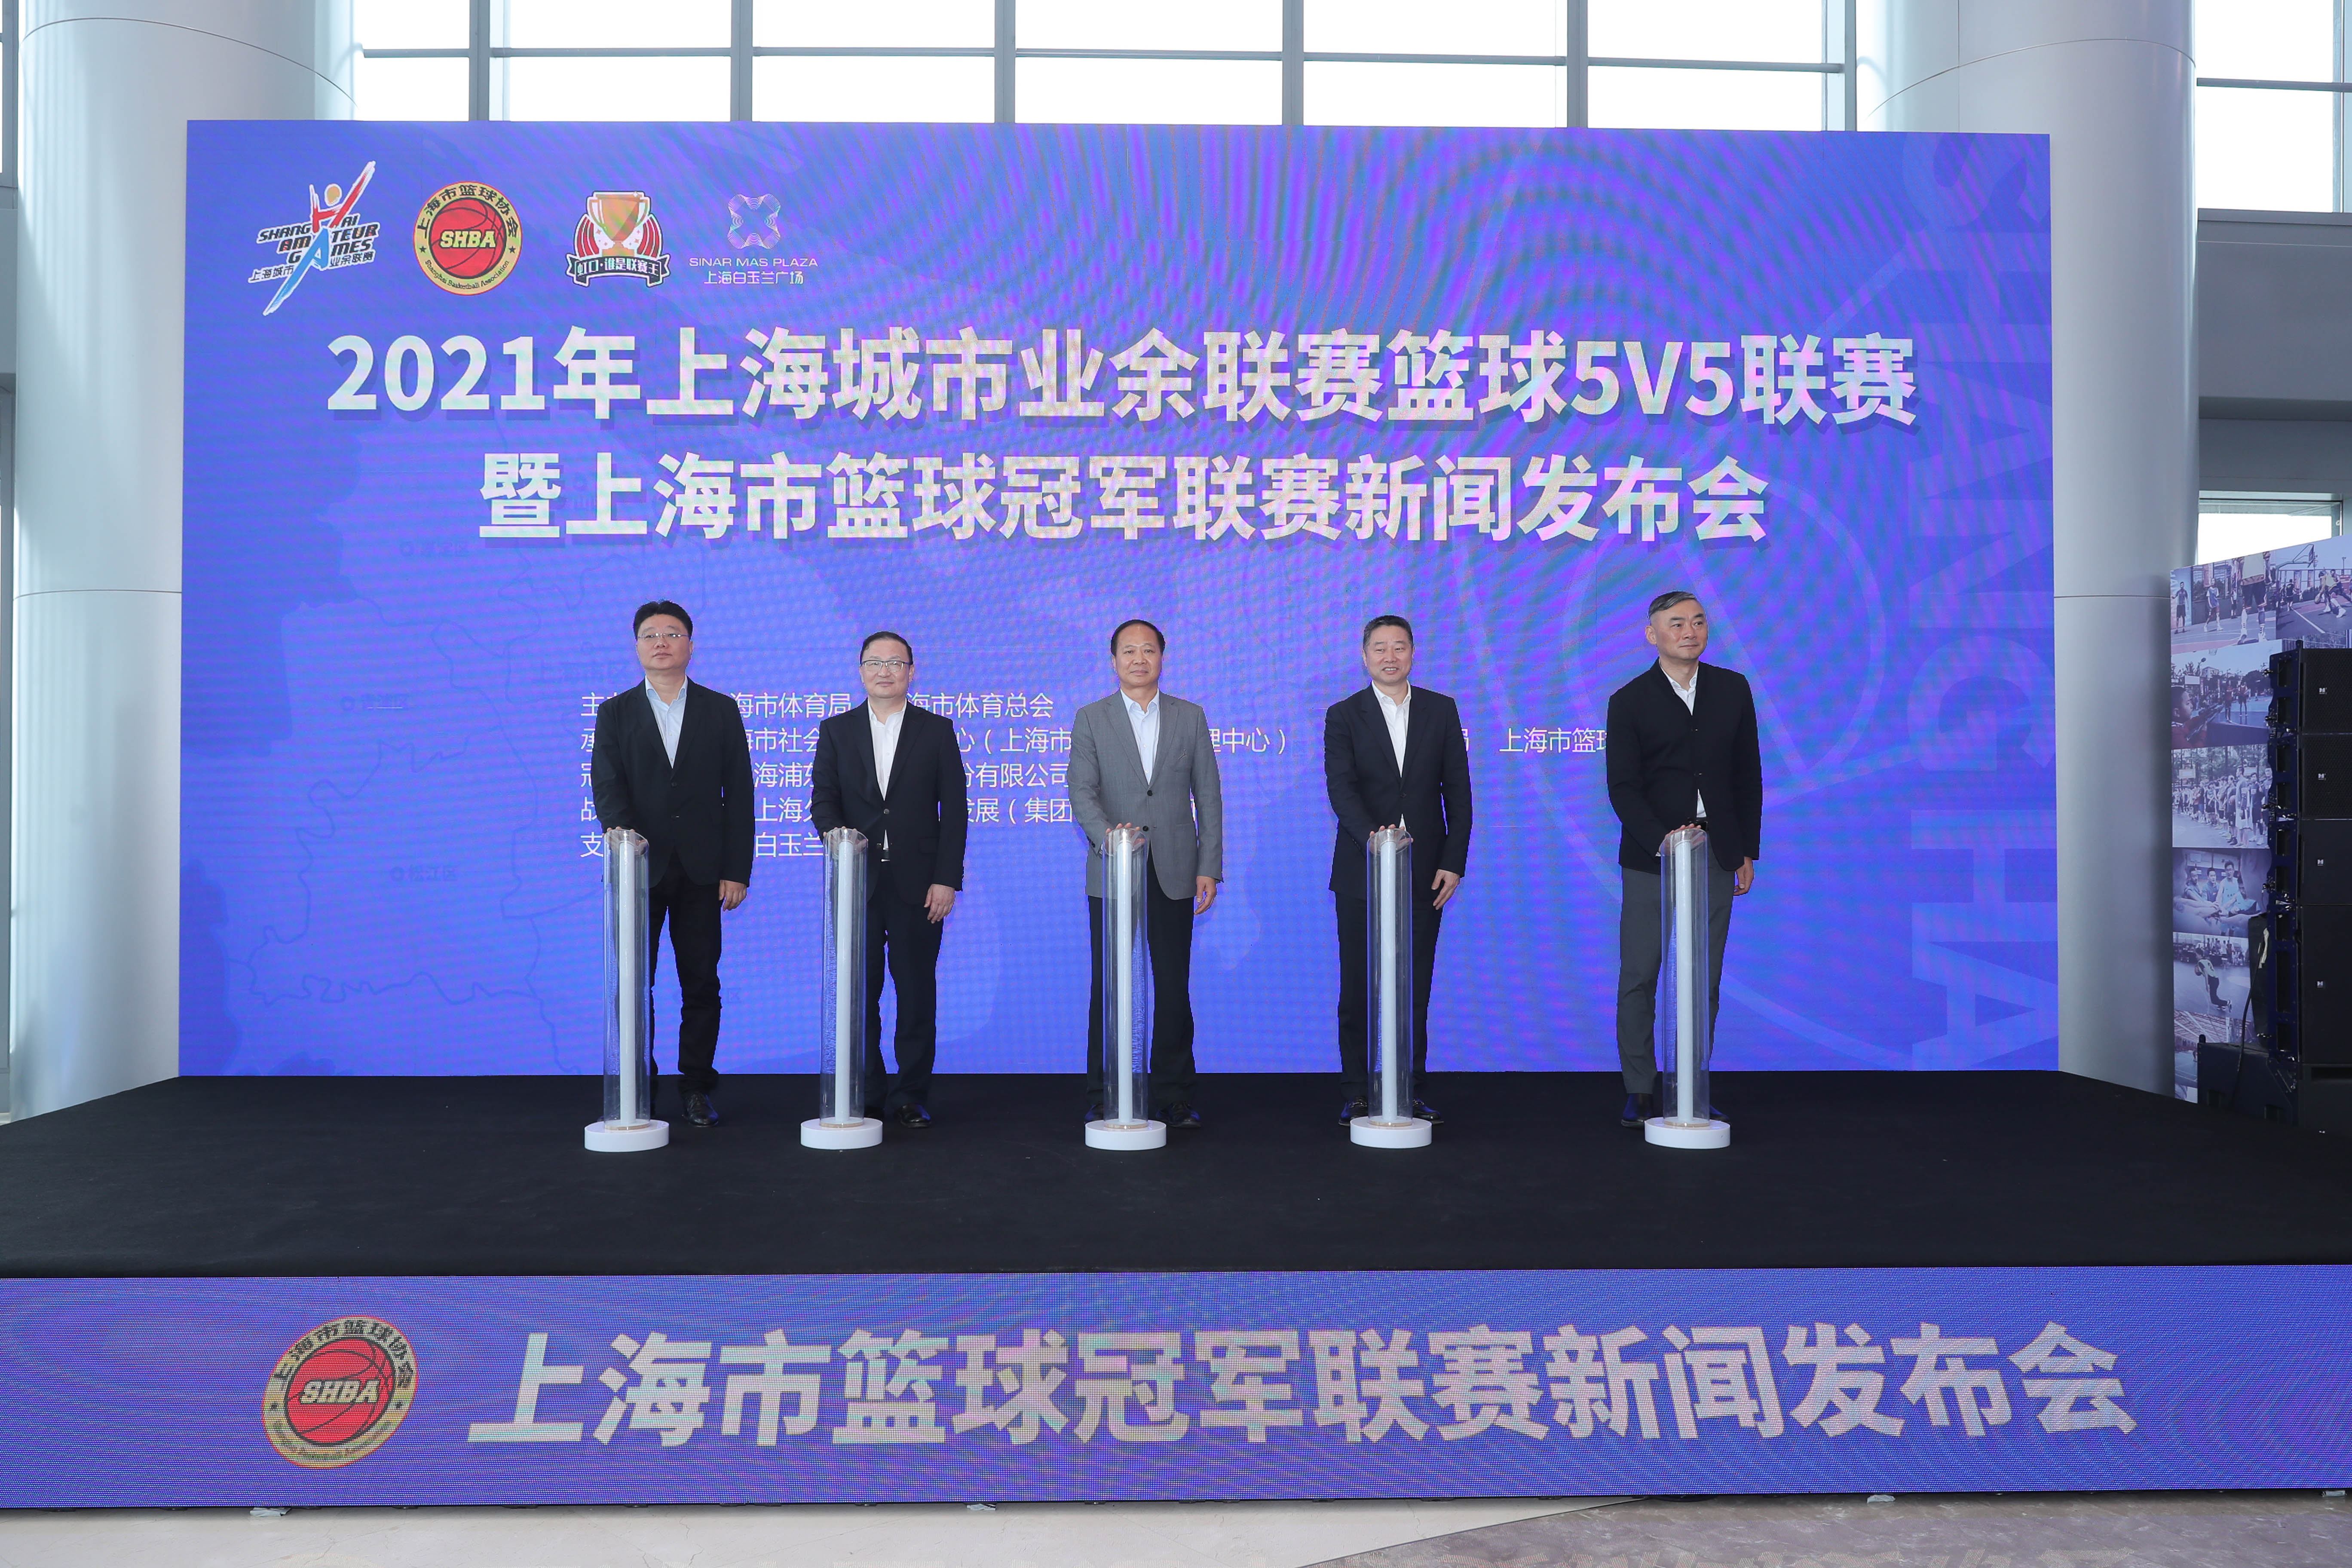 2021年上海城市业余联赛篮球5V5联赛 暨上海市篮球冠军联赛正式启动.jpg